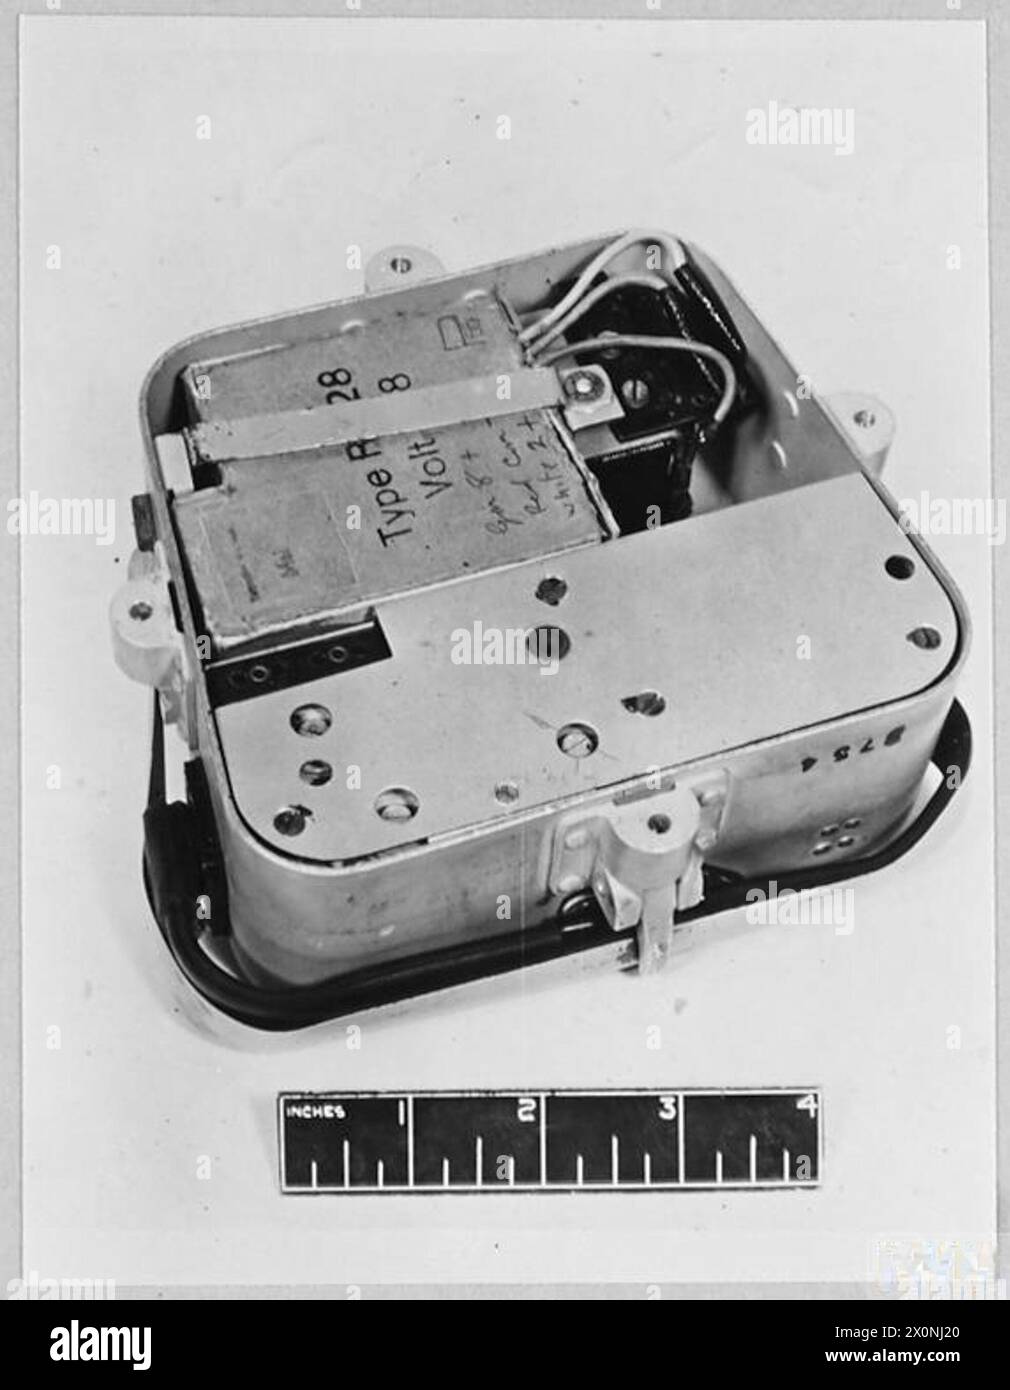 APPARECCHIATURE RADIO TEDESCHE - FIGURA XXX11(b) - NS.4 con antenna piegata e coperchio rimosso. Negativo fotografico, Royal Air Force Foto Stock